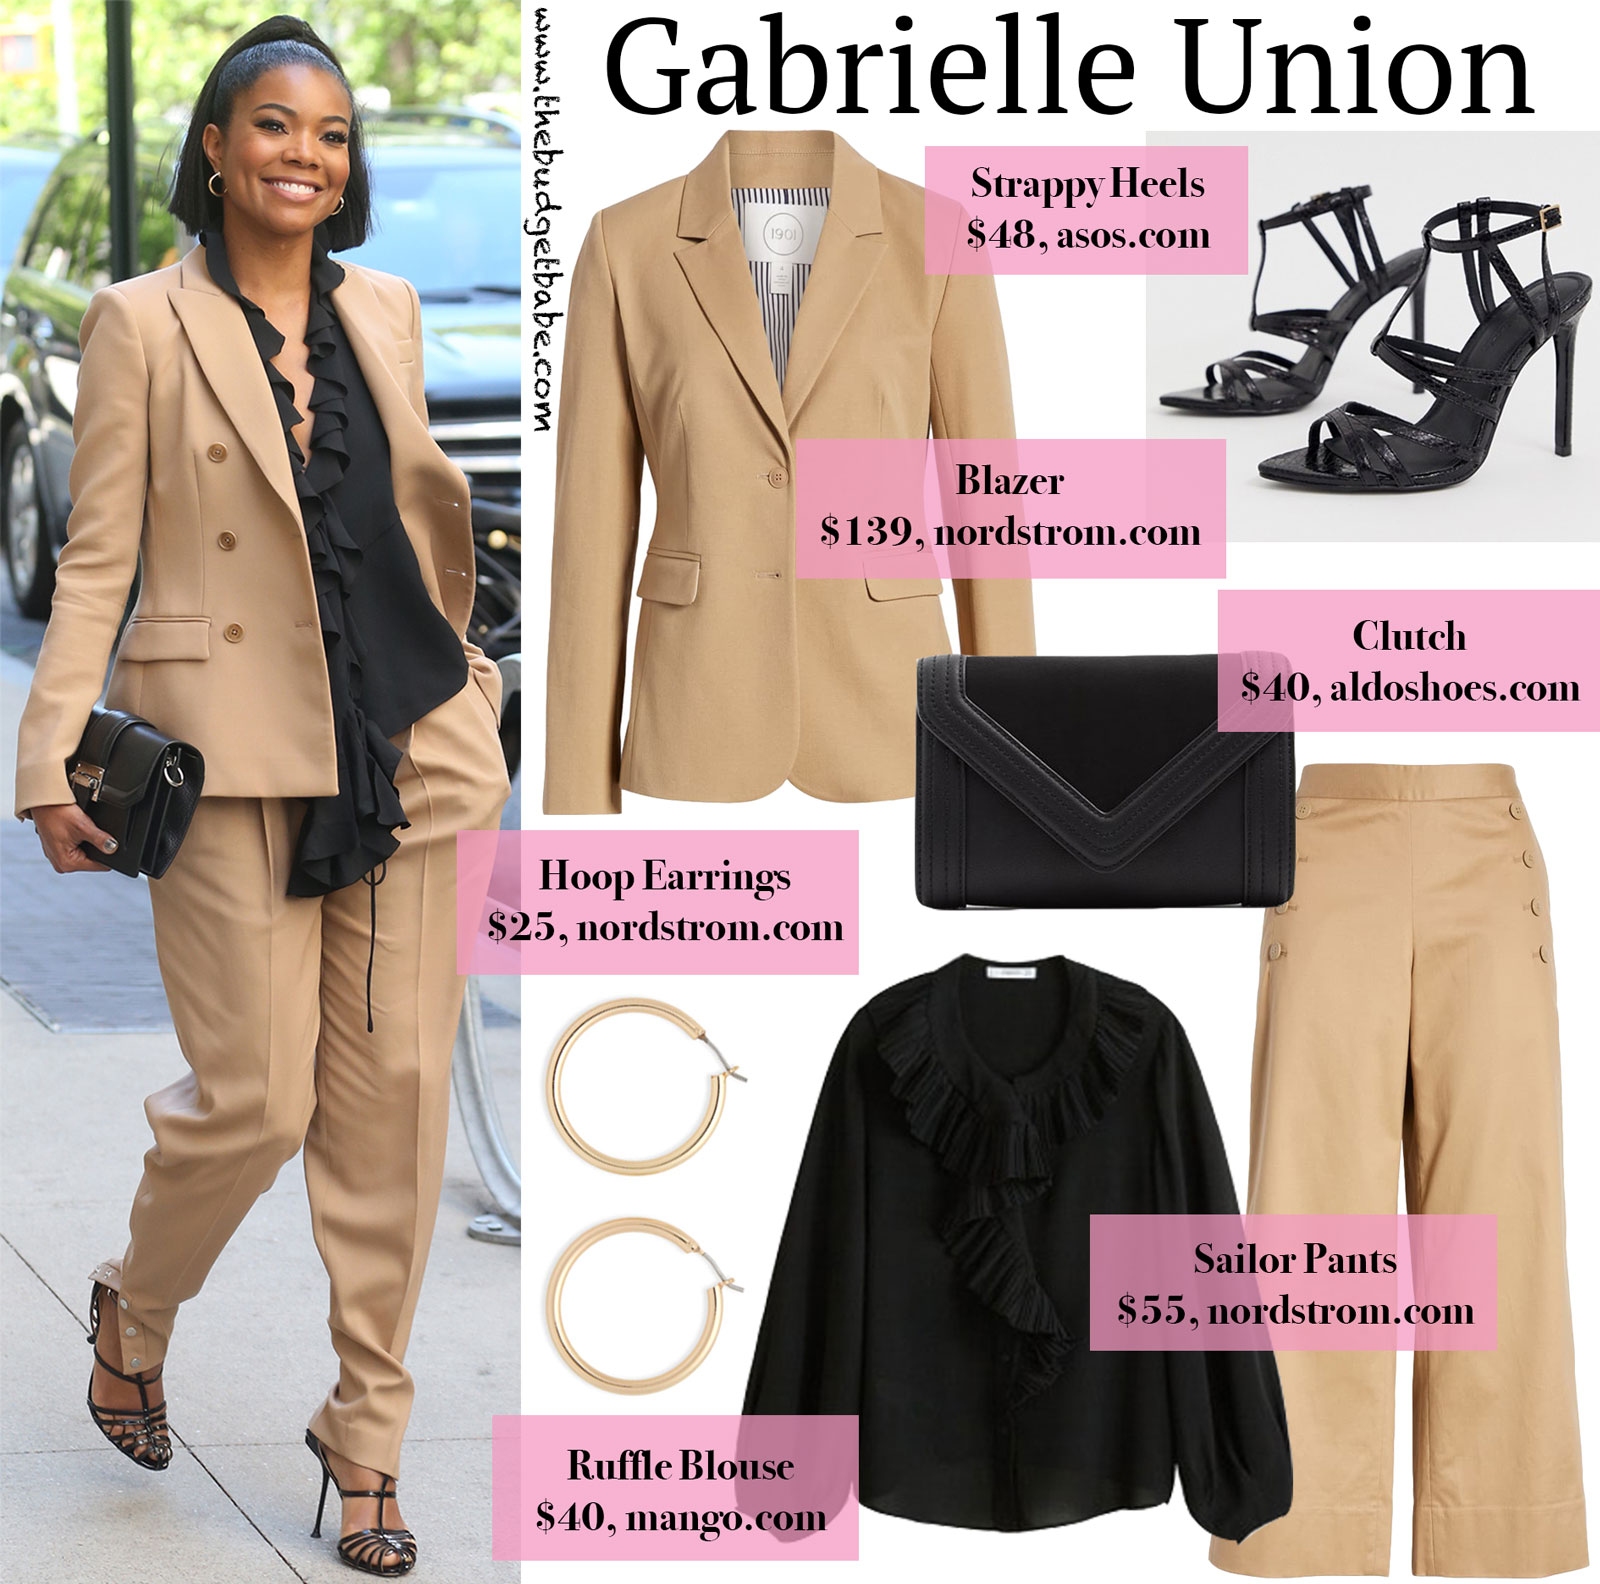 Gabrielle Union Tan Suit Look for Less